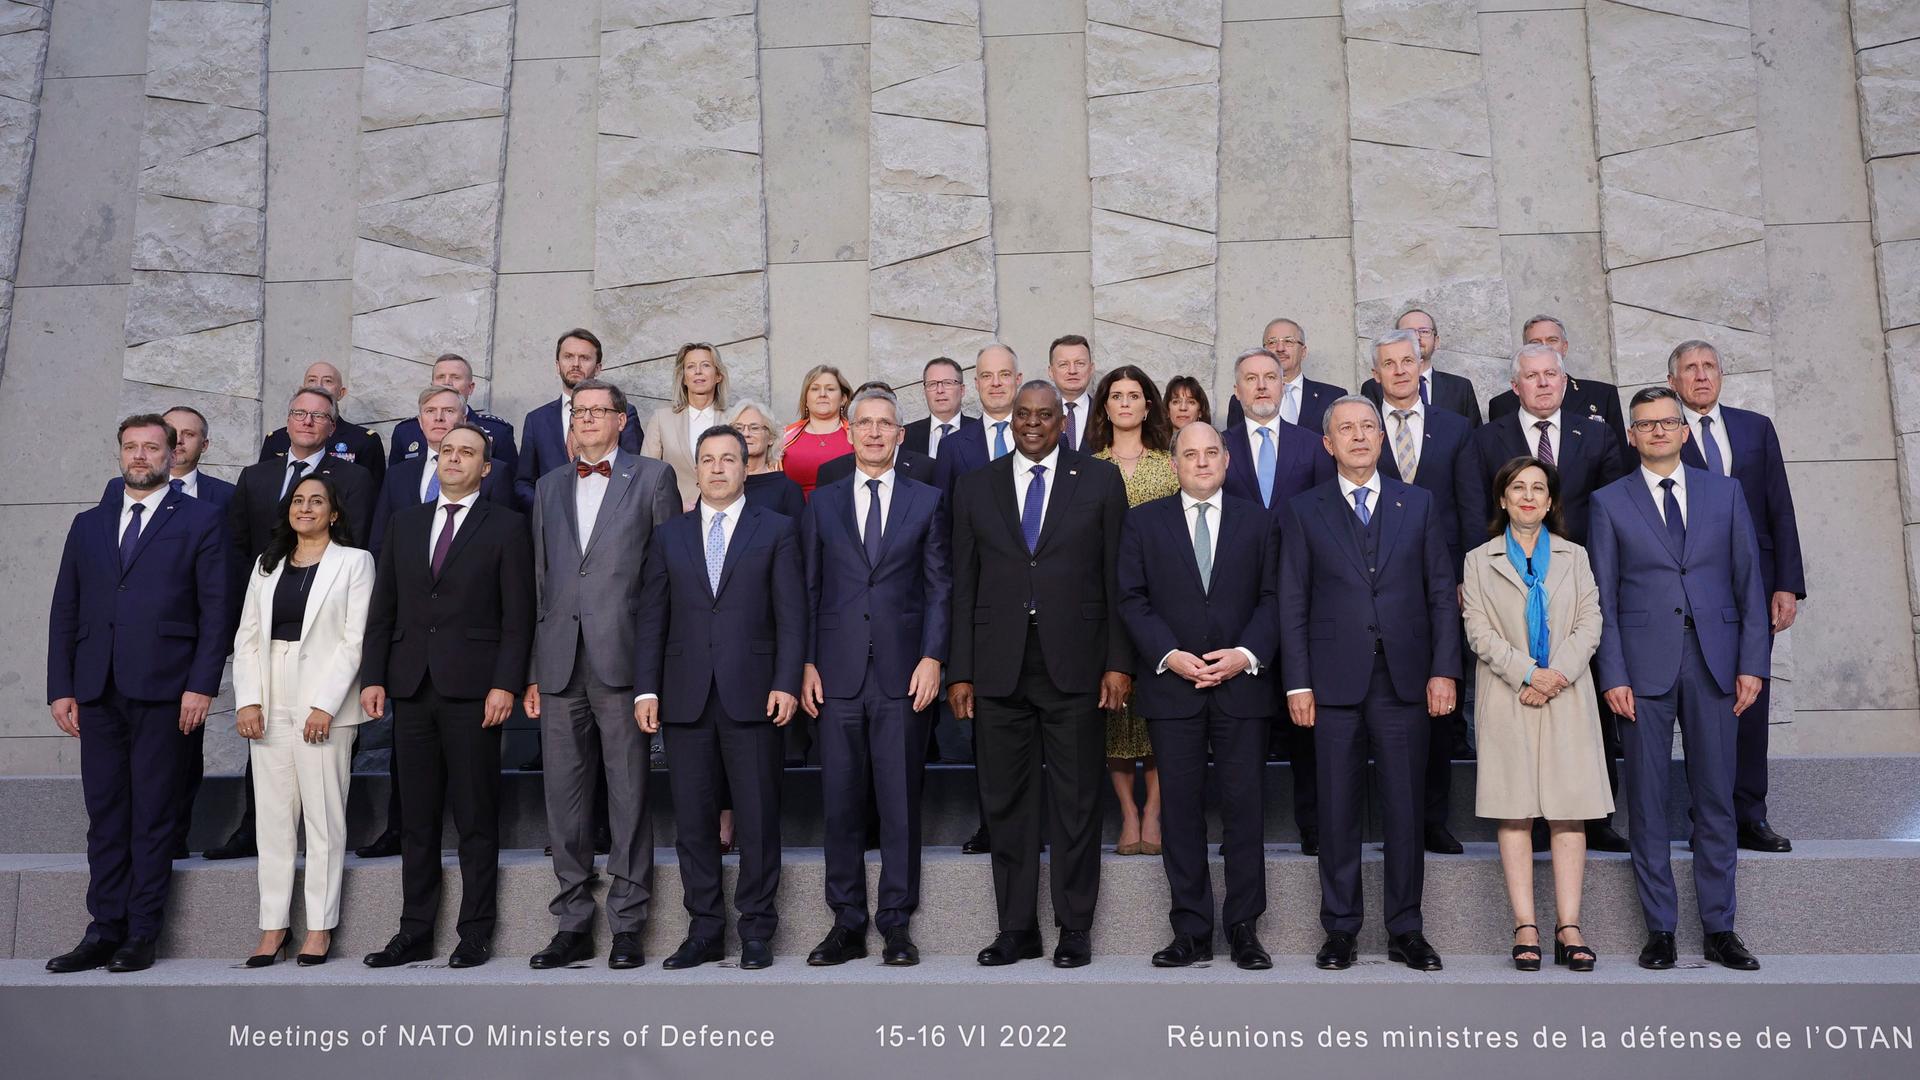 Die Ministerinnen und -minister stehen zu einem Gruppenfoto neben- und hintereinander vor einer grauen Wand.